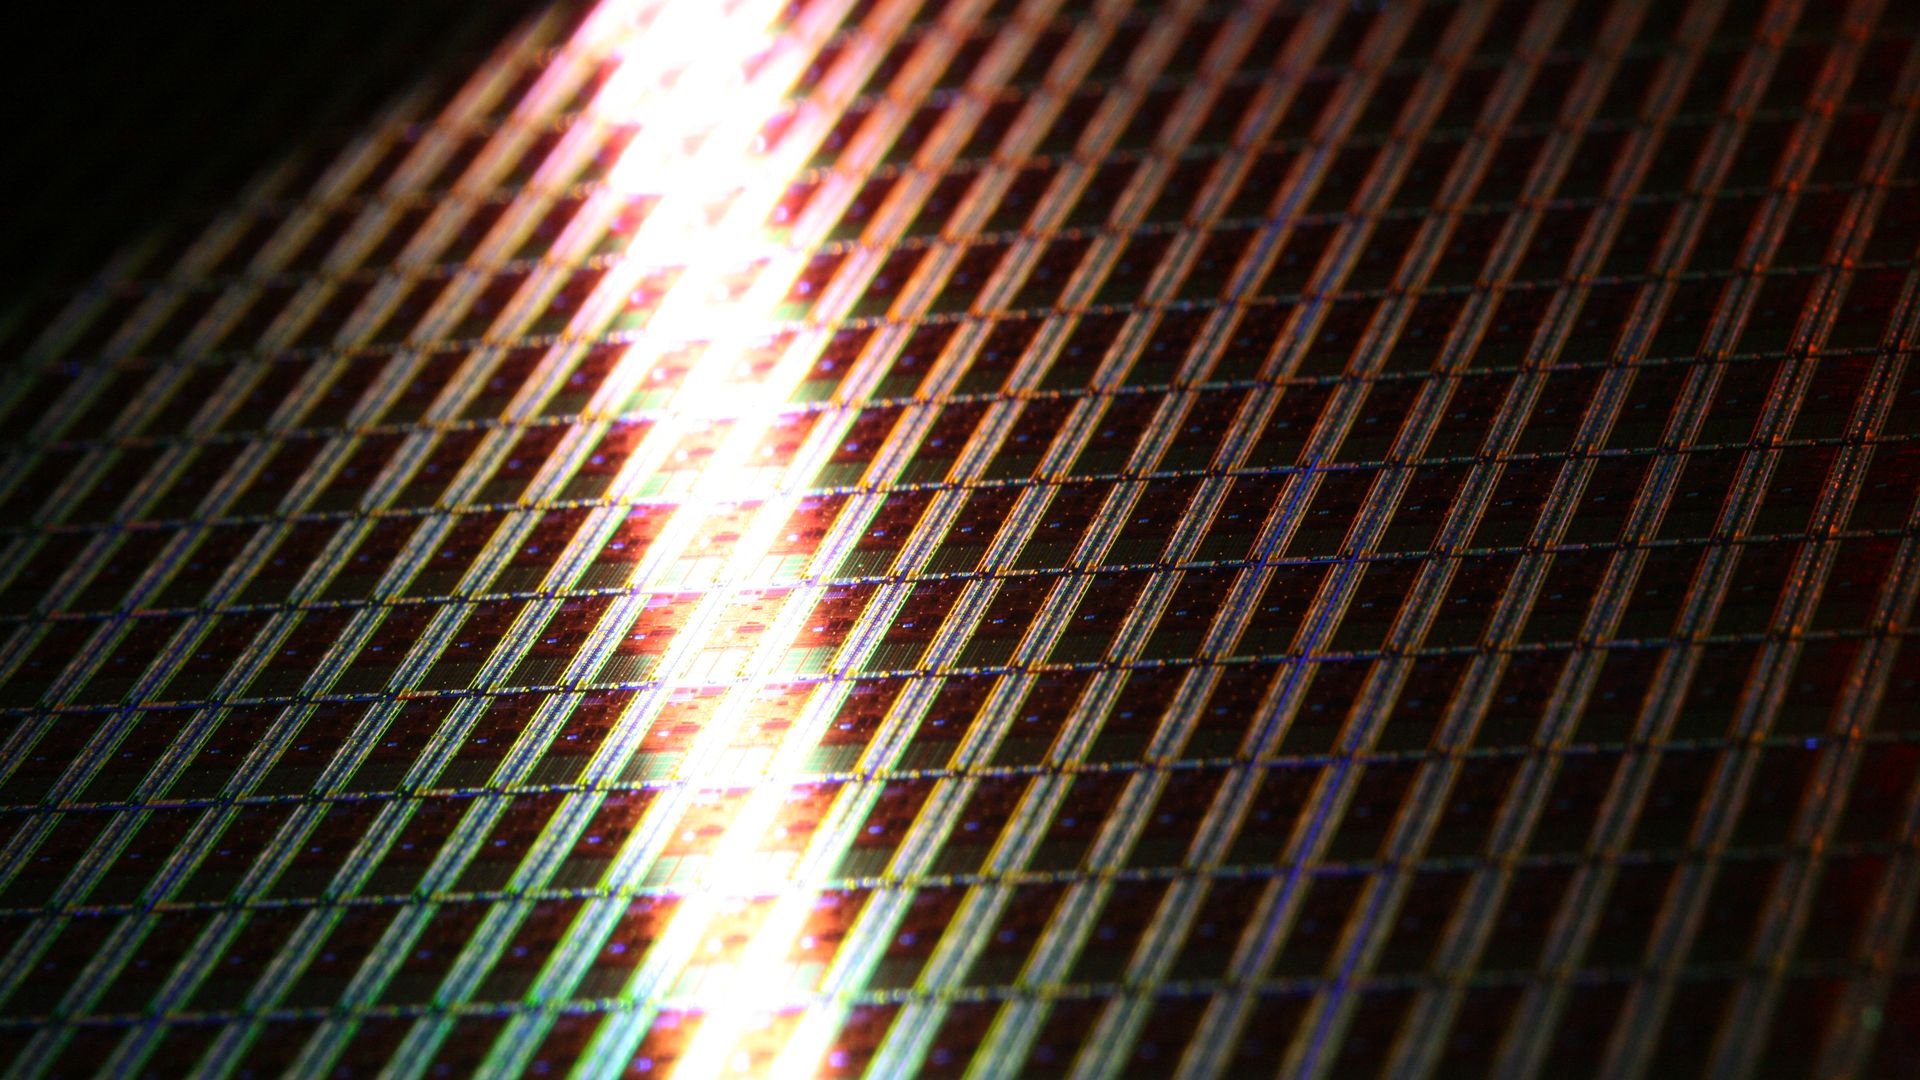 An Intel chip wafer